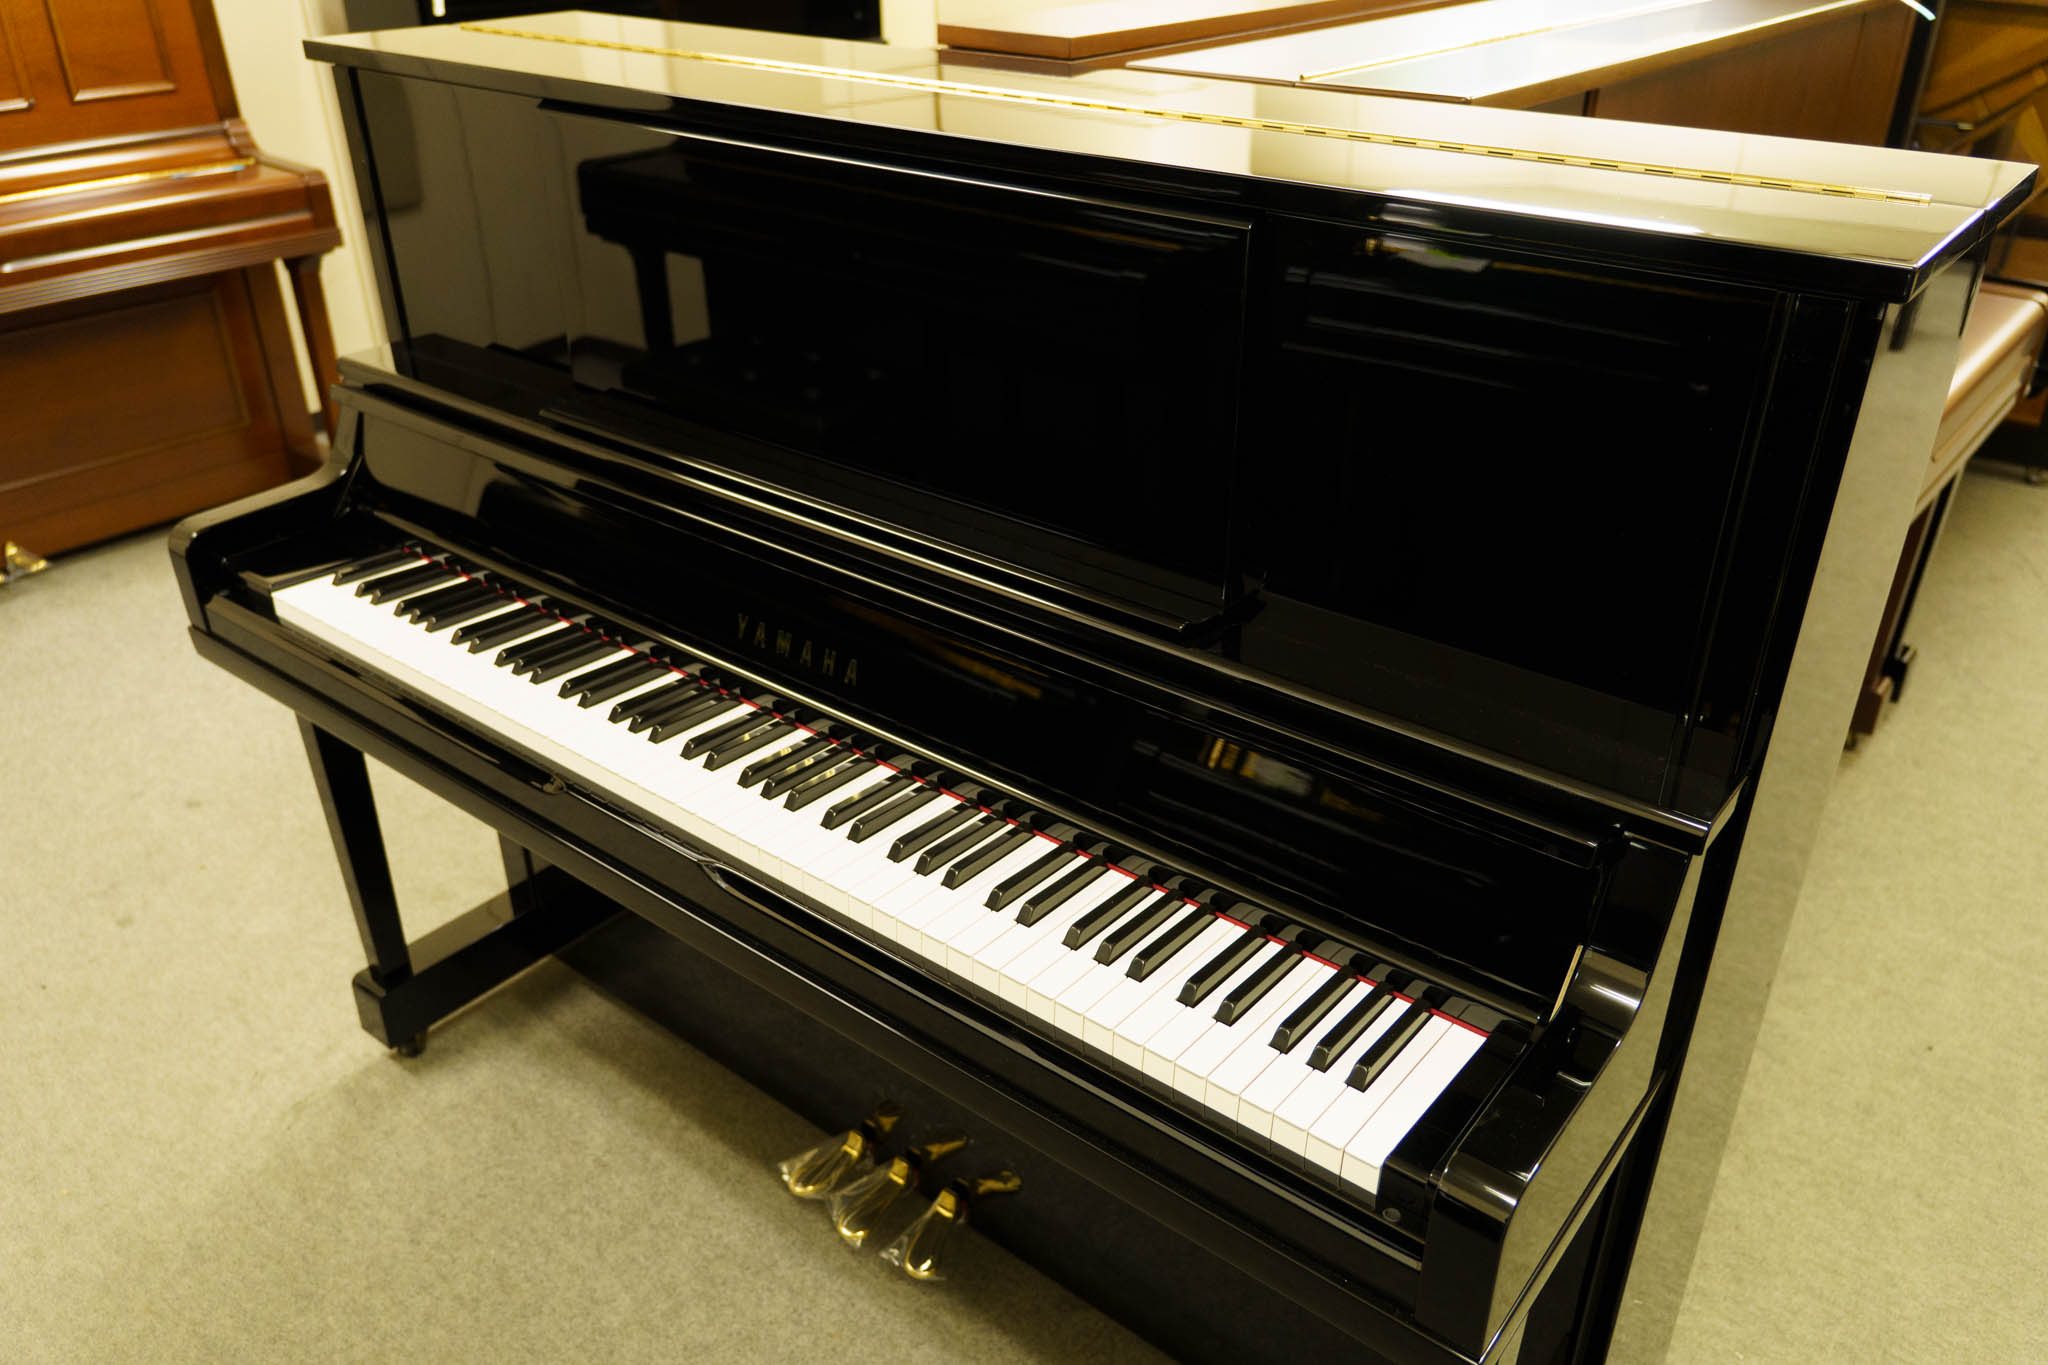 ヤマハ UX10A| 中古ピアノ 自社工房リフレッシュ済3年保証付 | 新響 